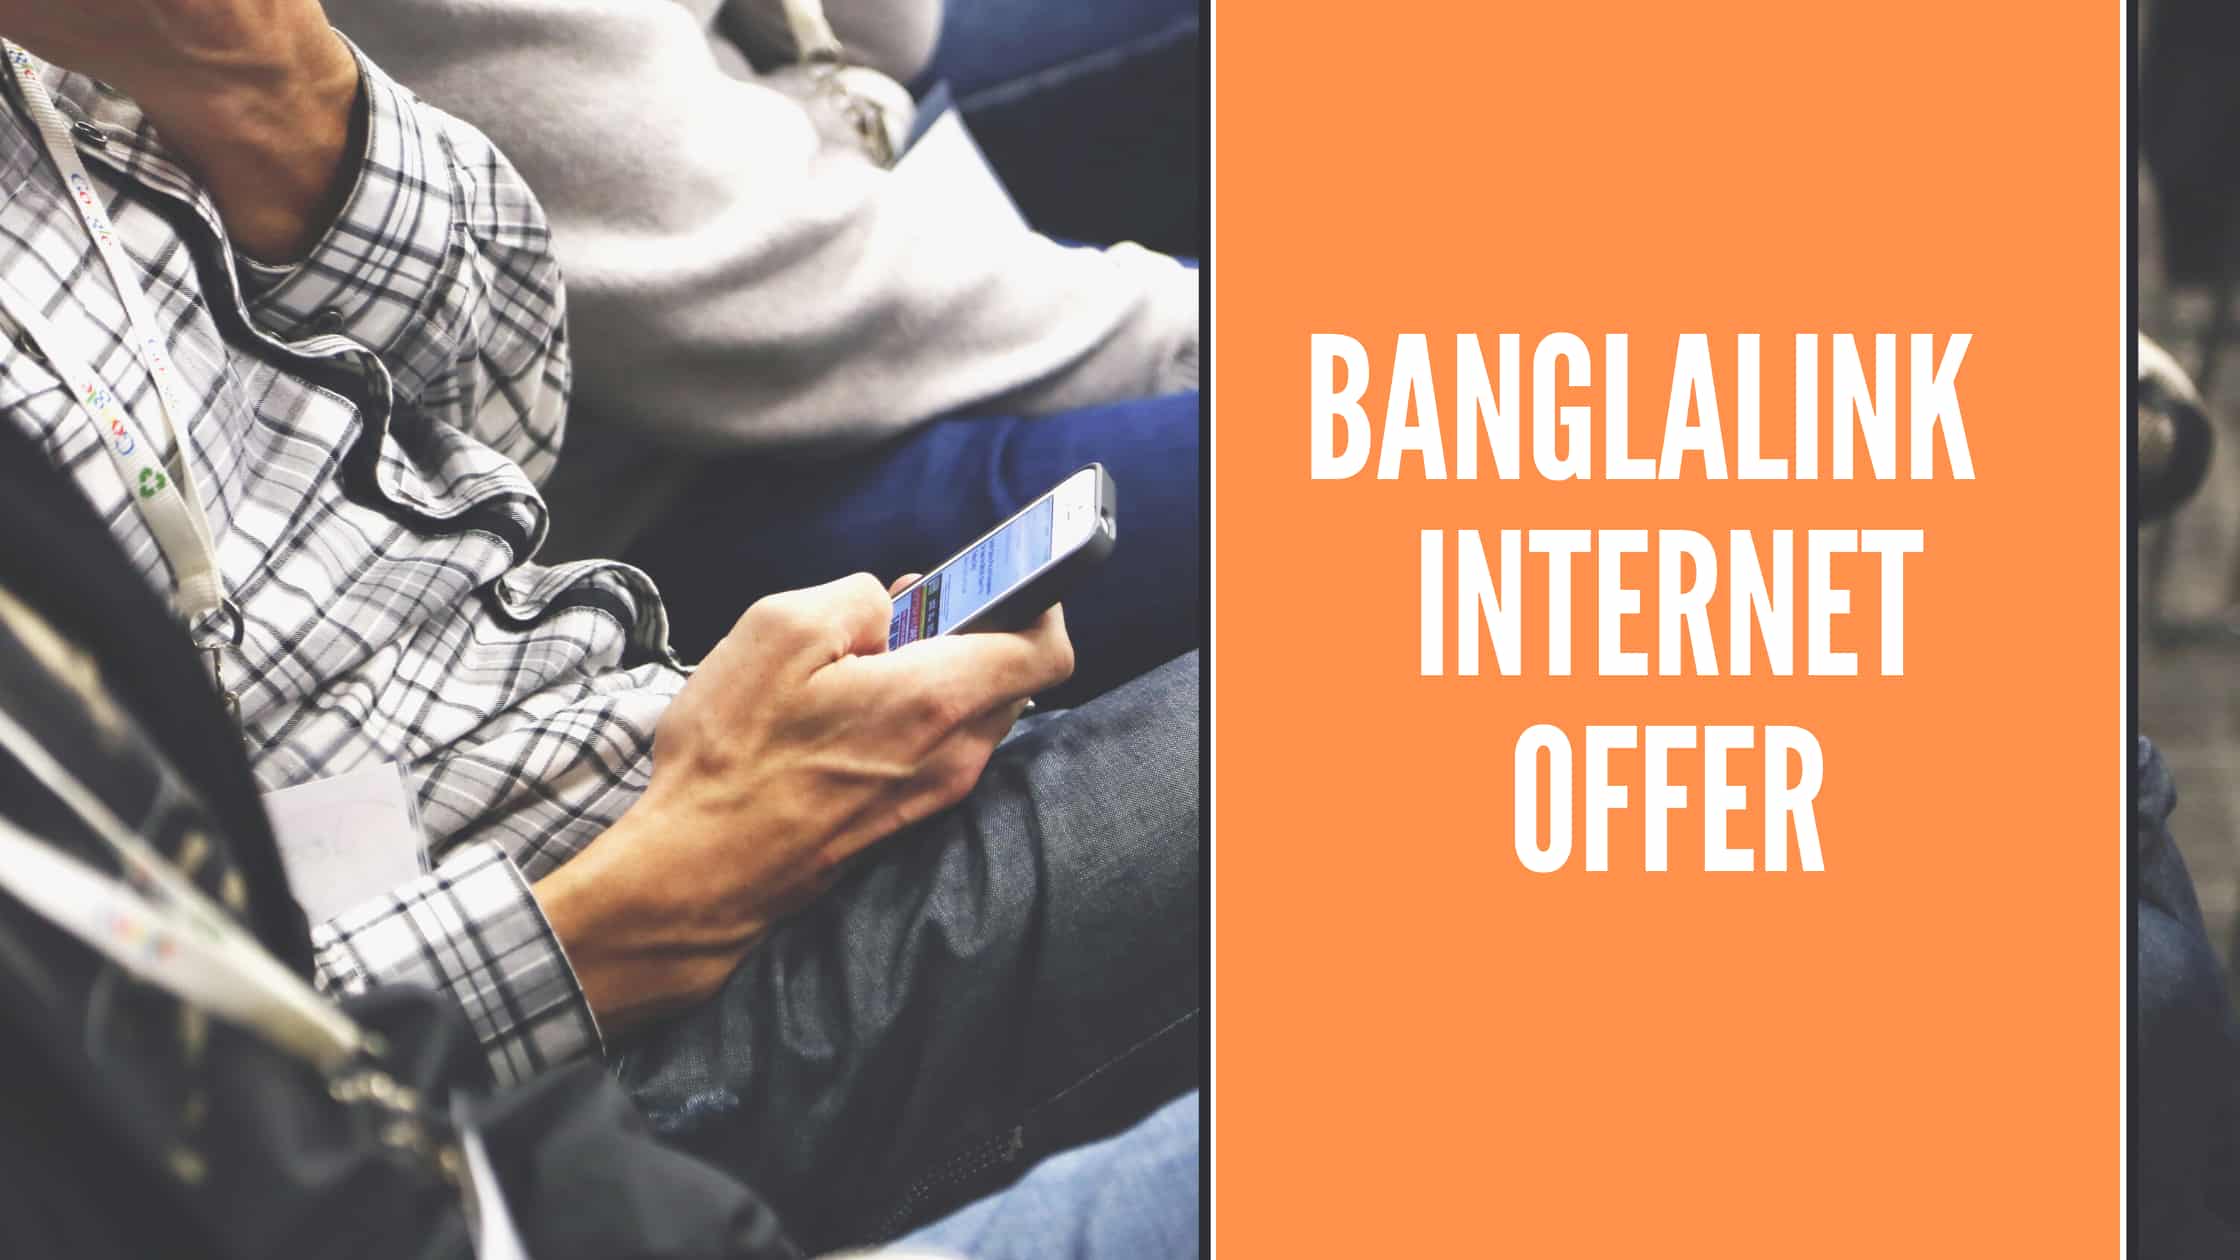 Banglalink Internet Offer